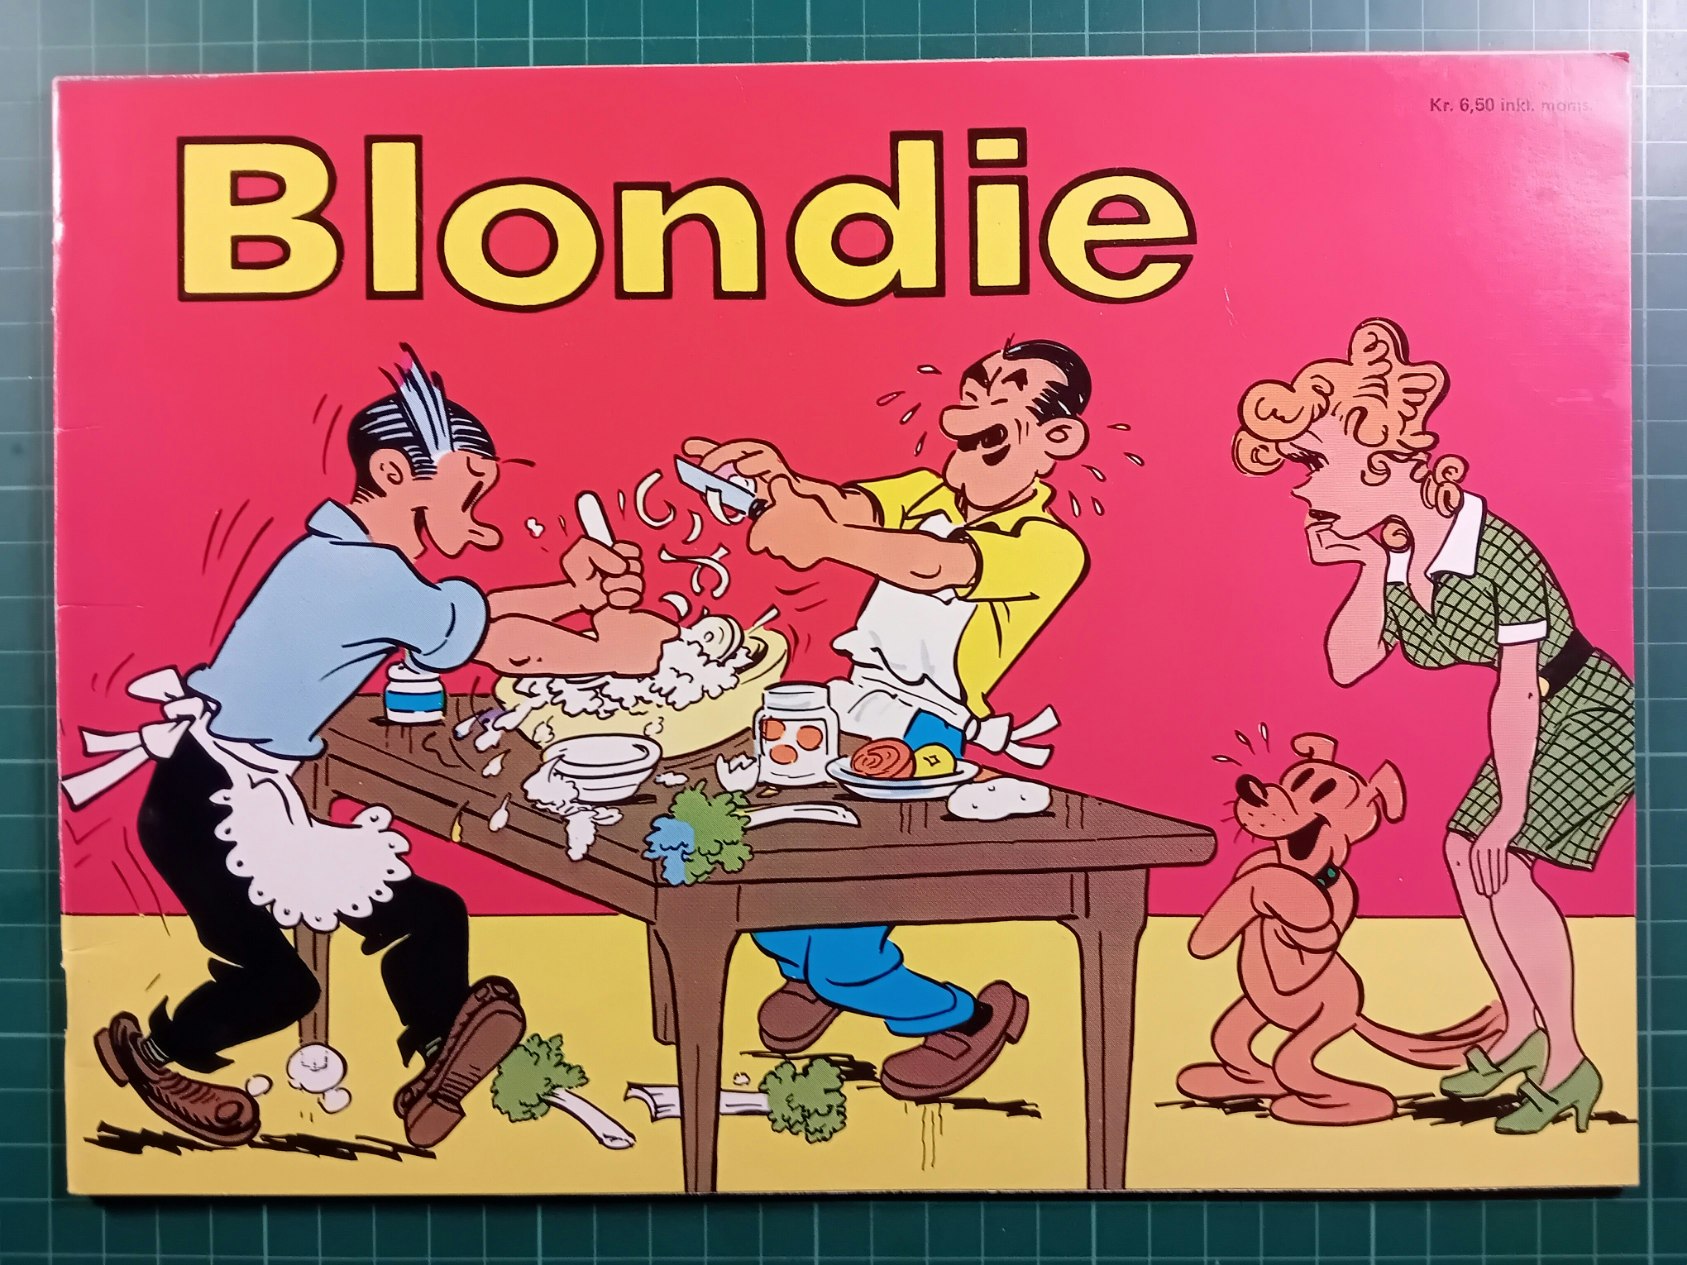 Blondie Julen 1975